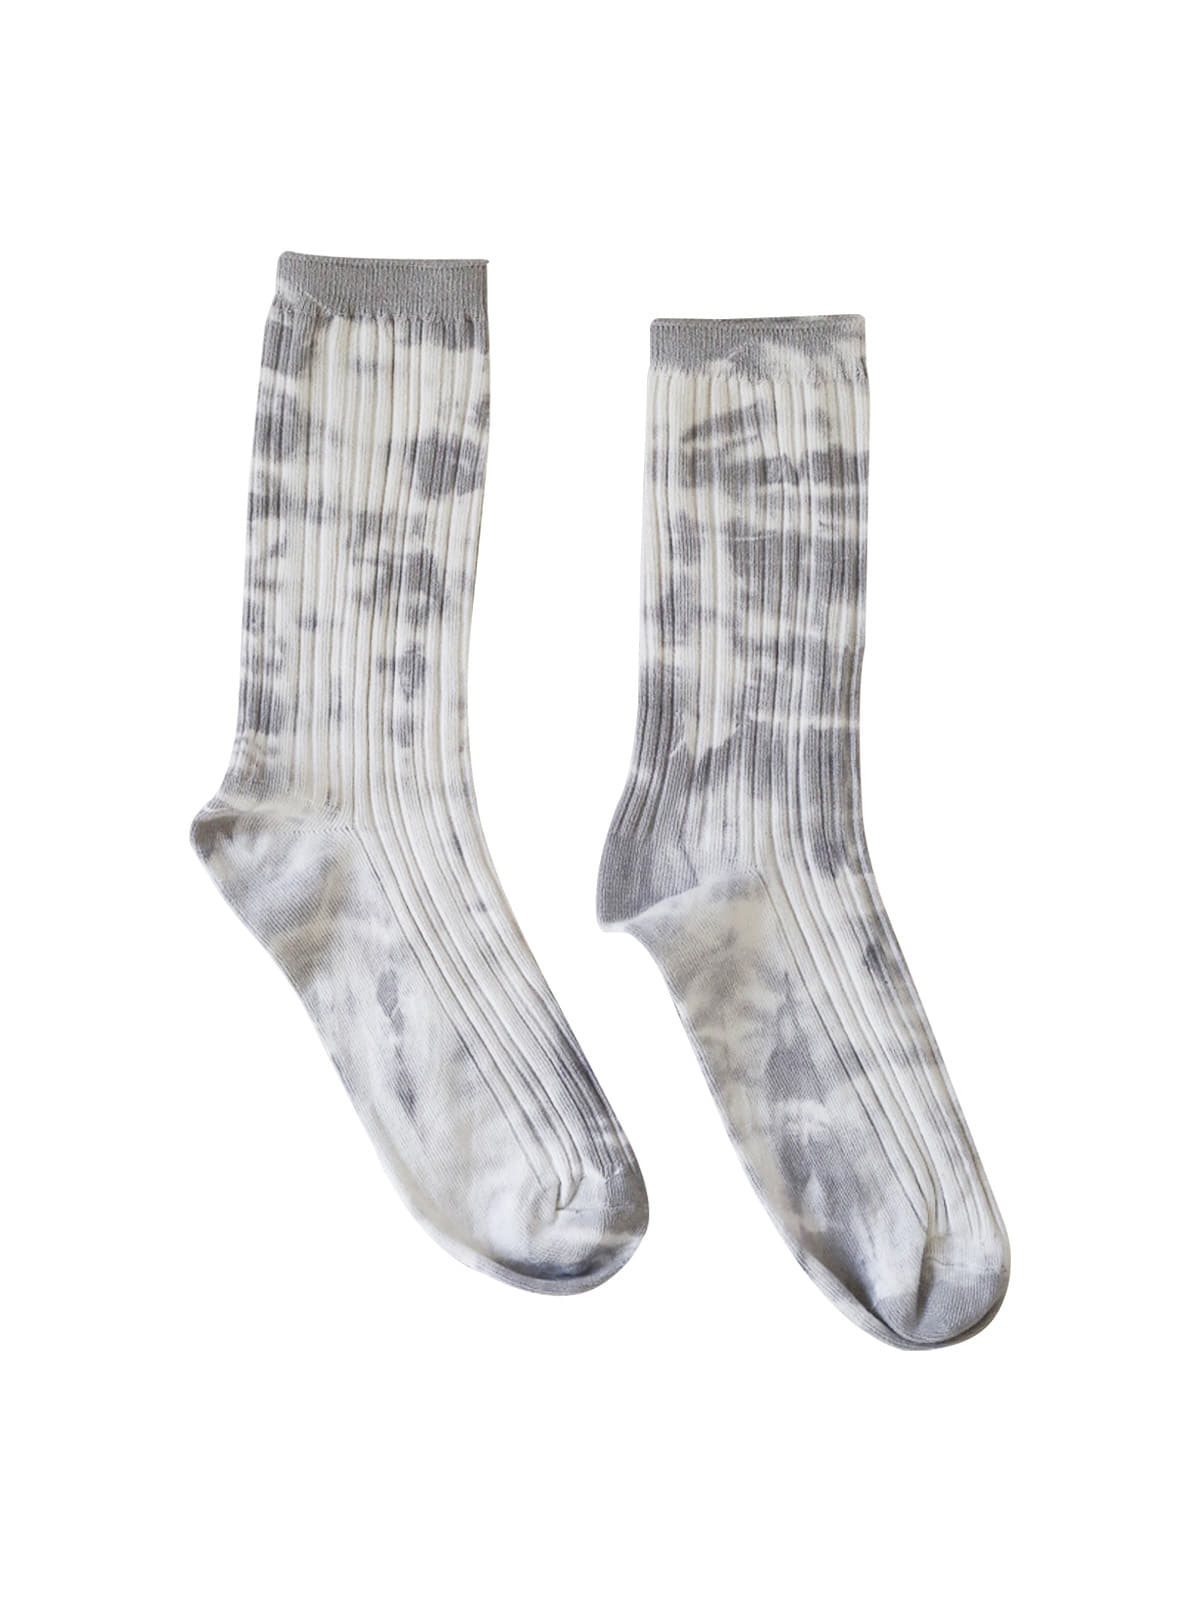 Plants tie-dye socks in gray